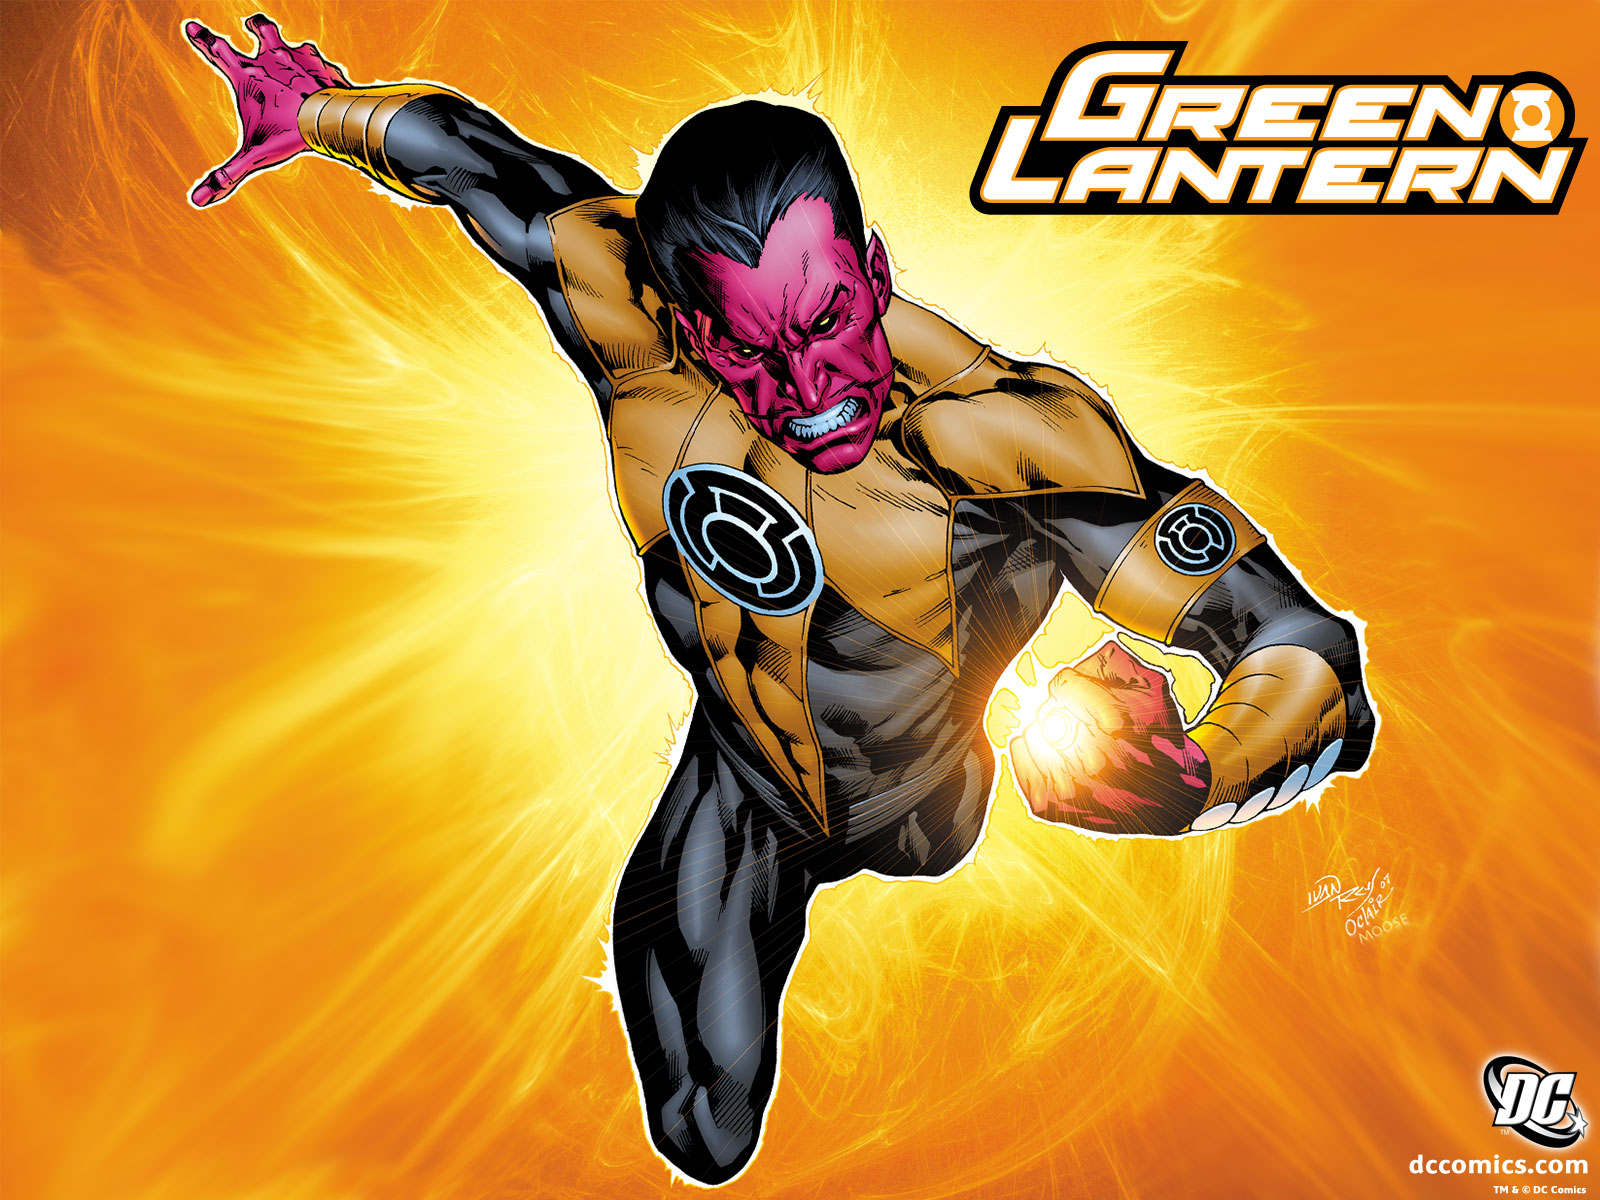 Скачать обои бесплатно Комиксы, Зеленый Фонарь, Синестро (Dc Comics) картинка на рабочий стол ПК